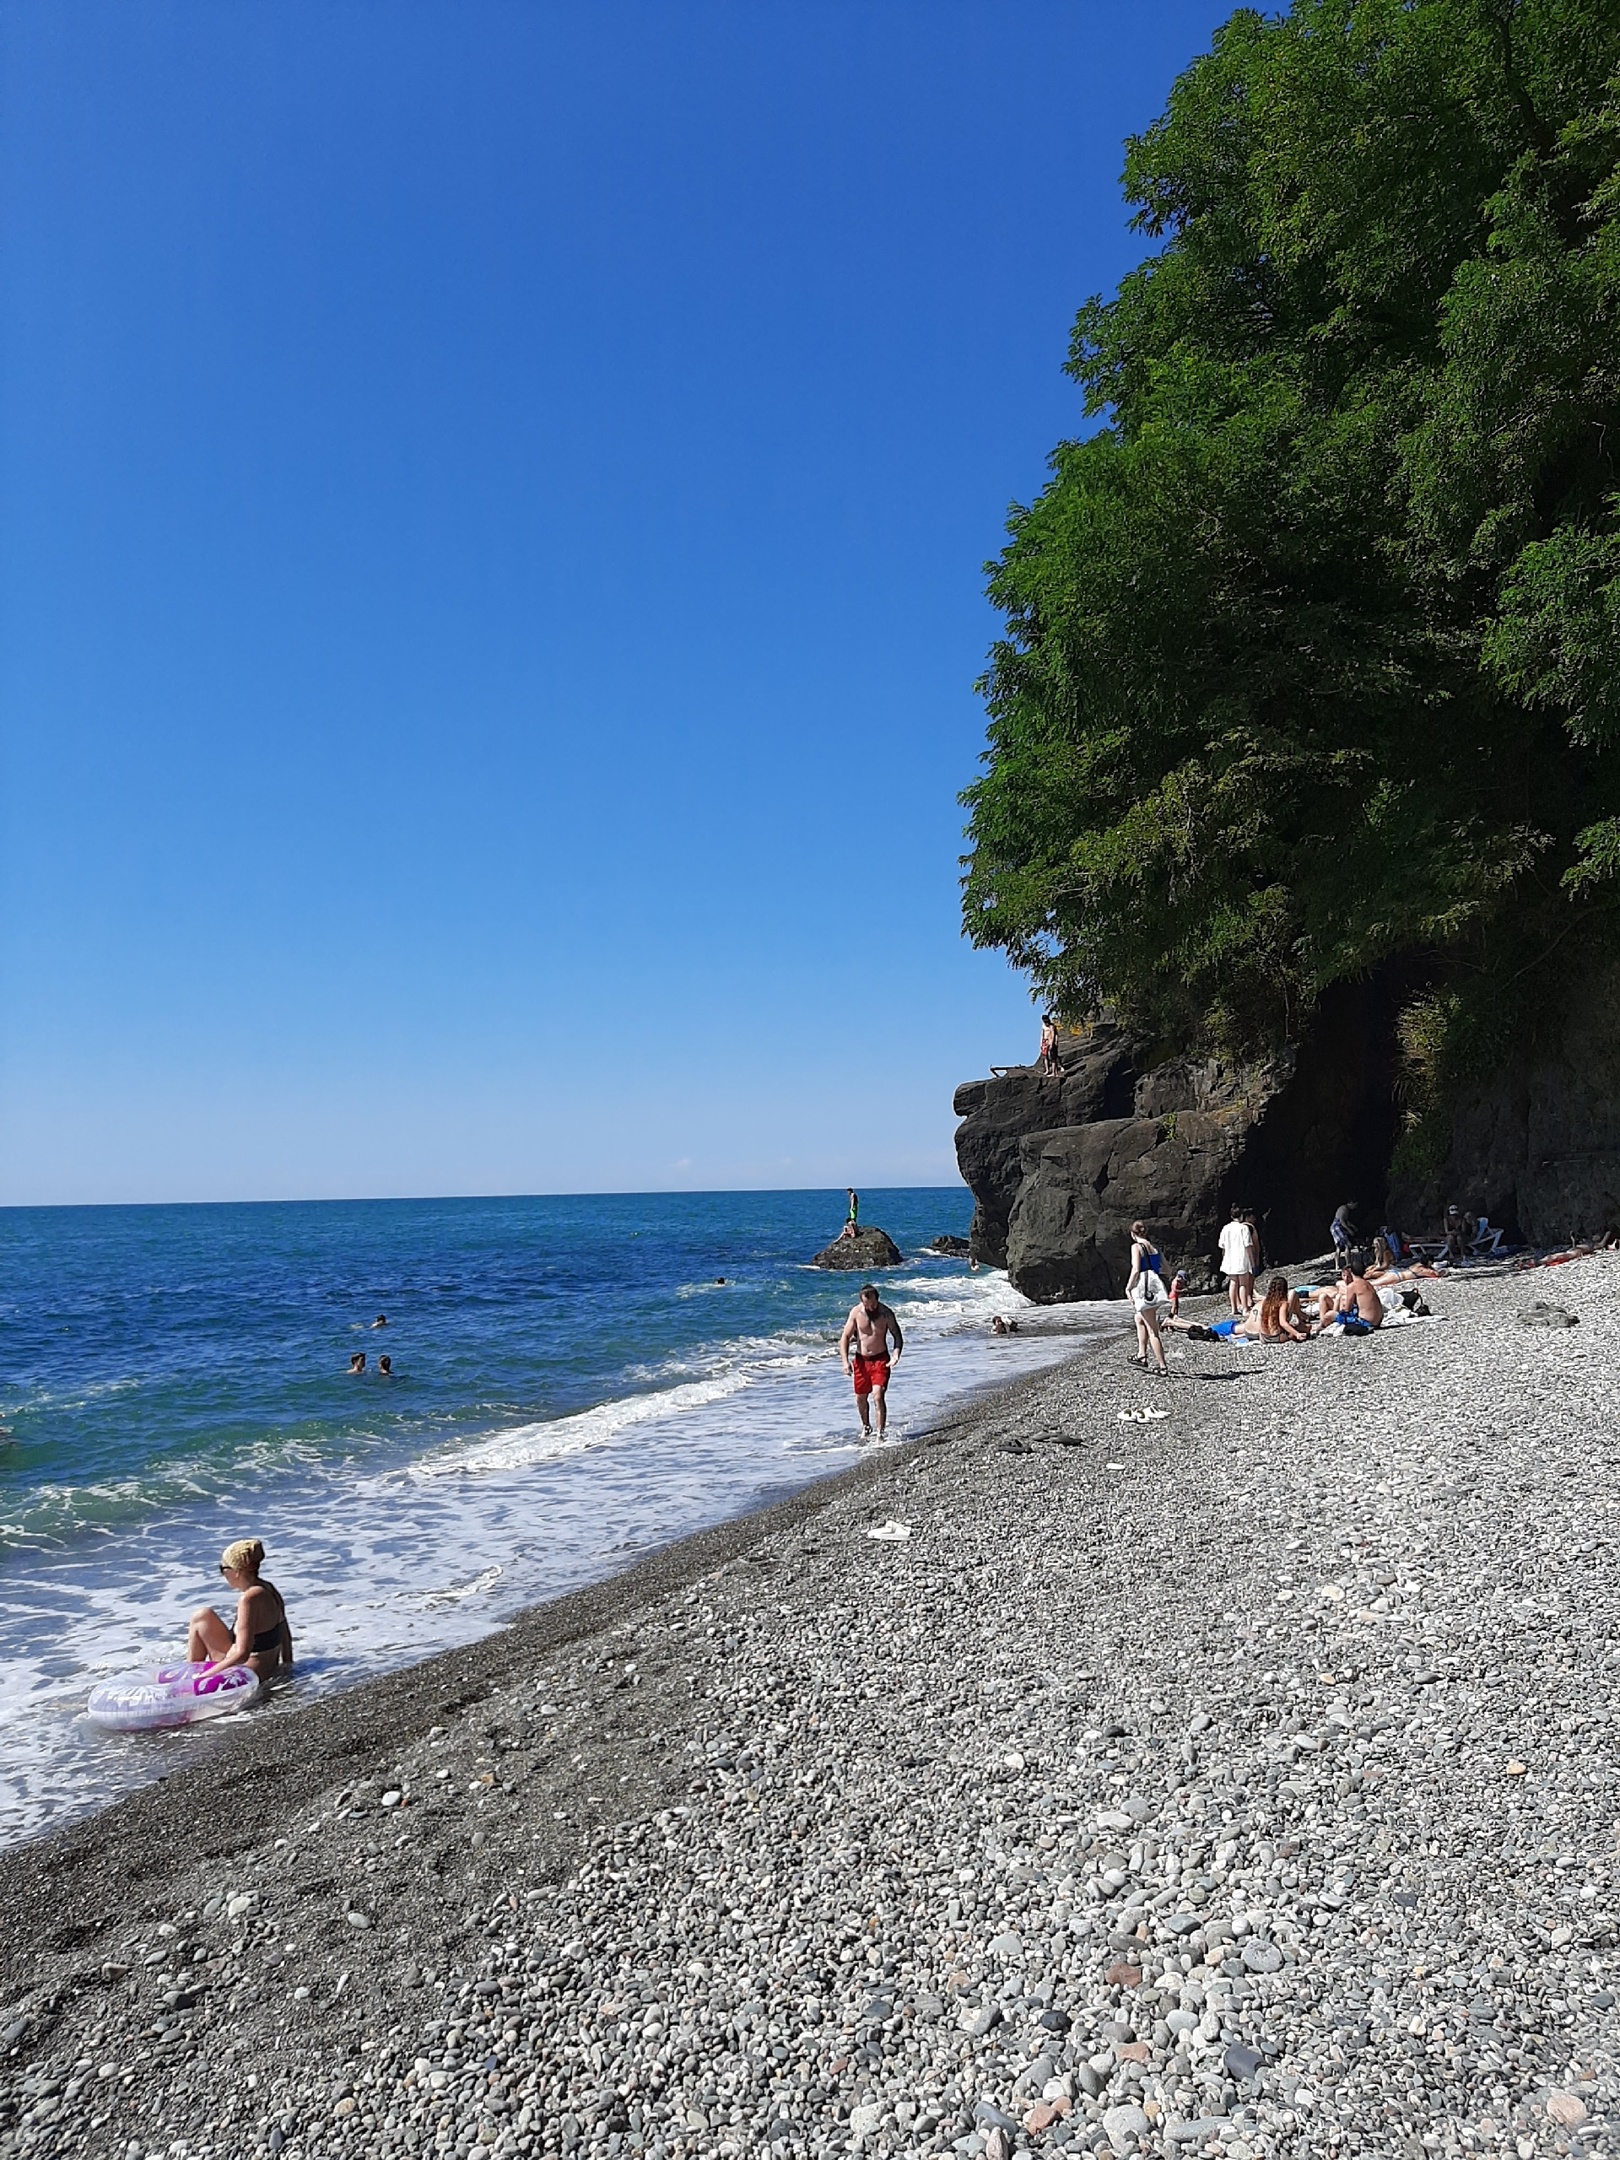 Теперь нельзя: отдыхающим запретили купаться в Черном море